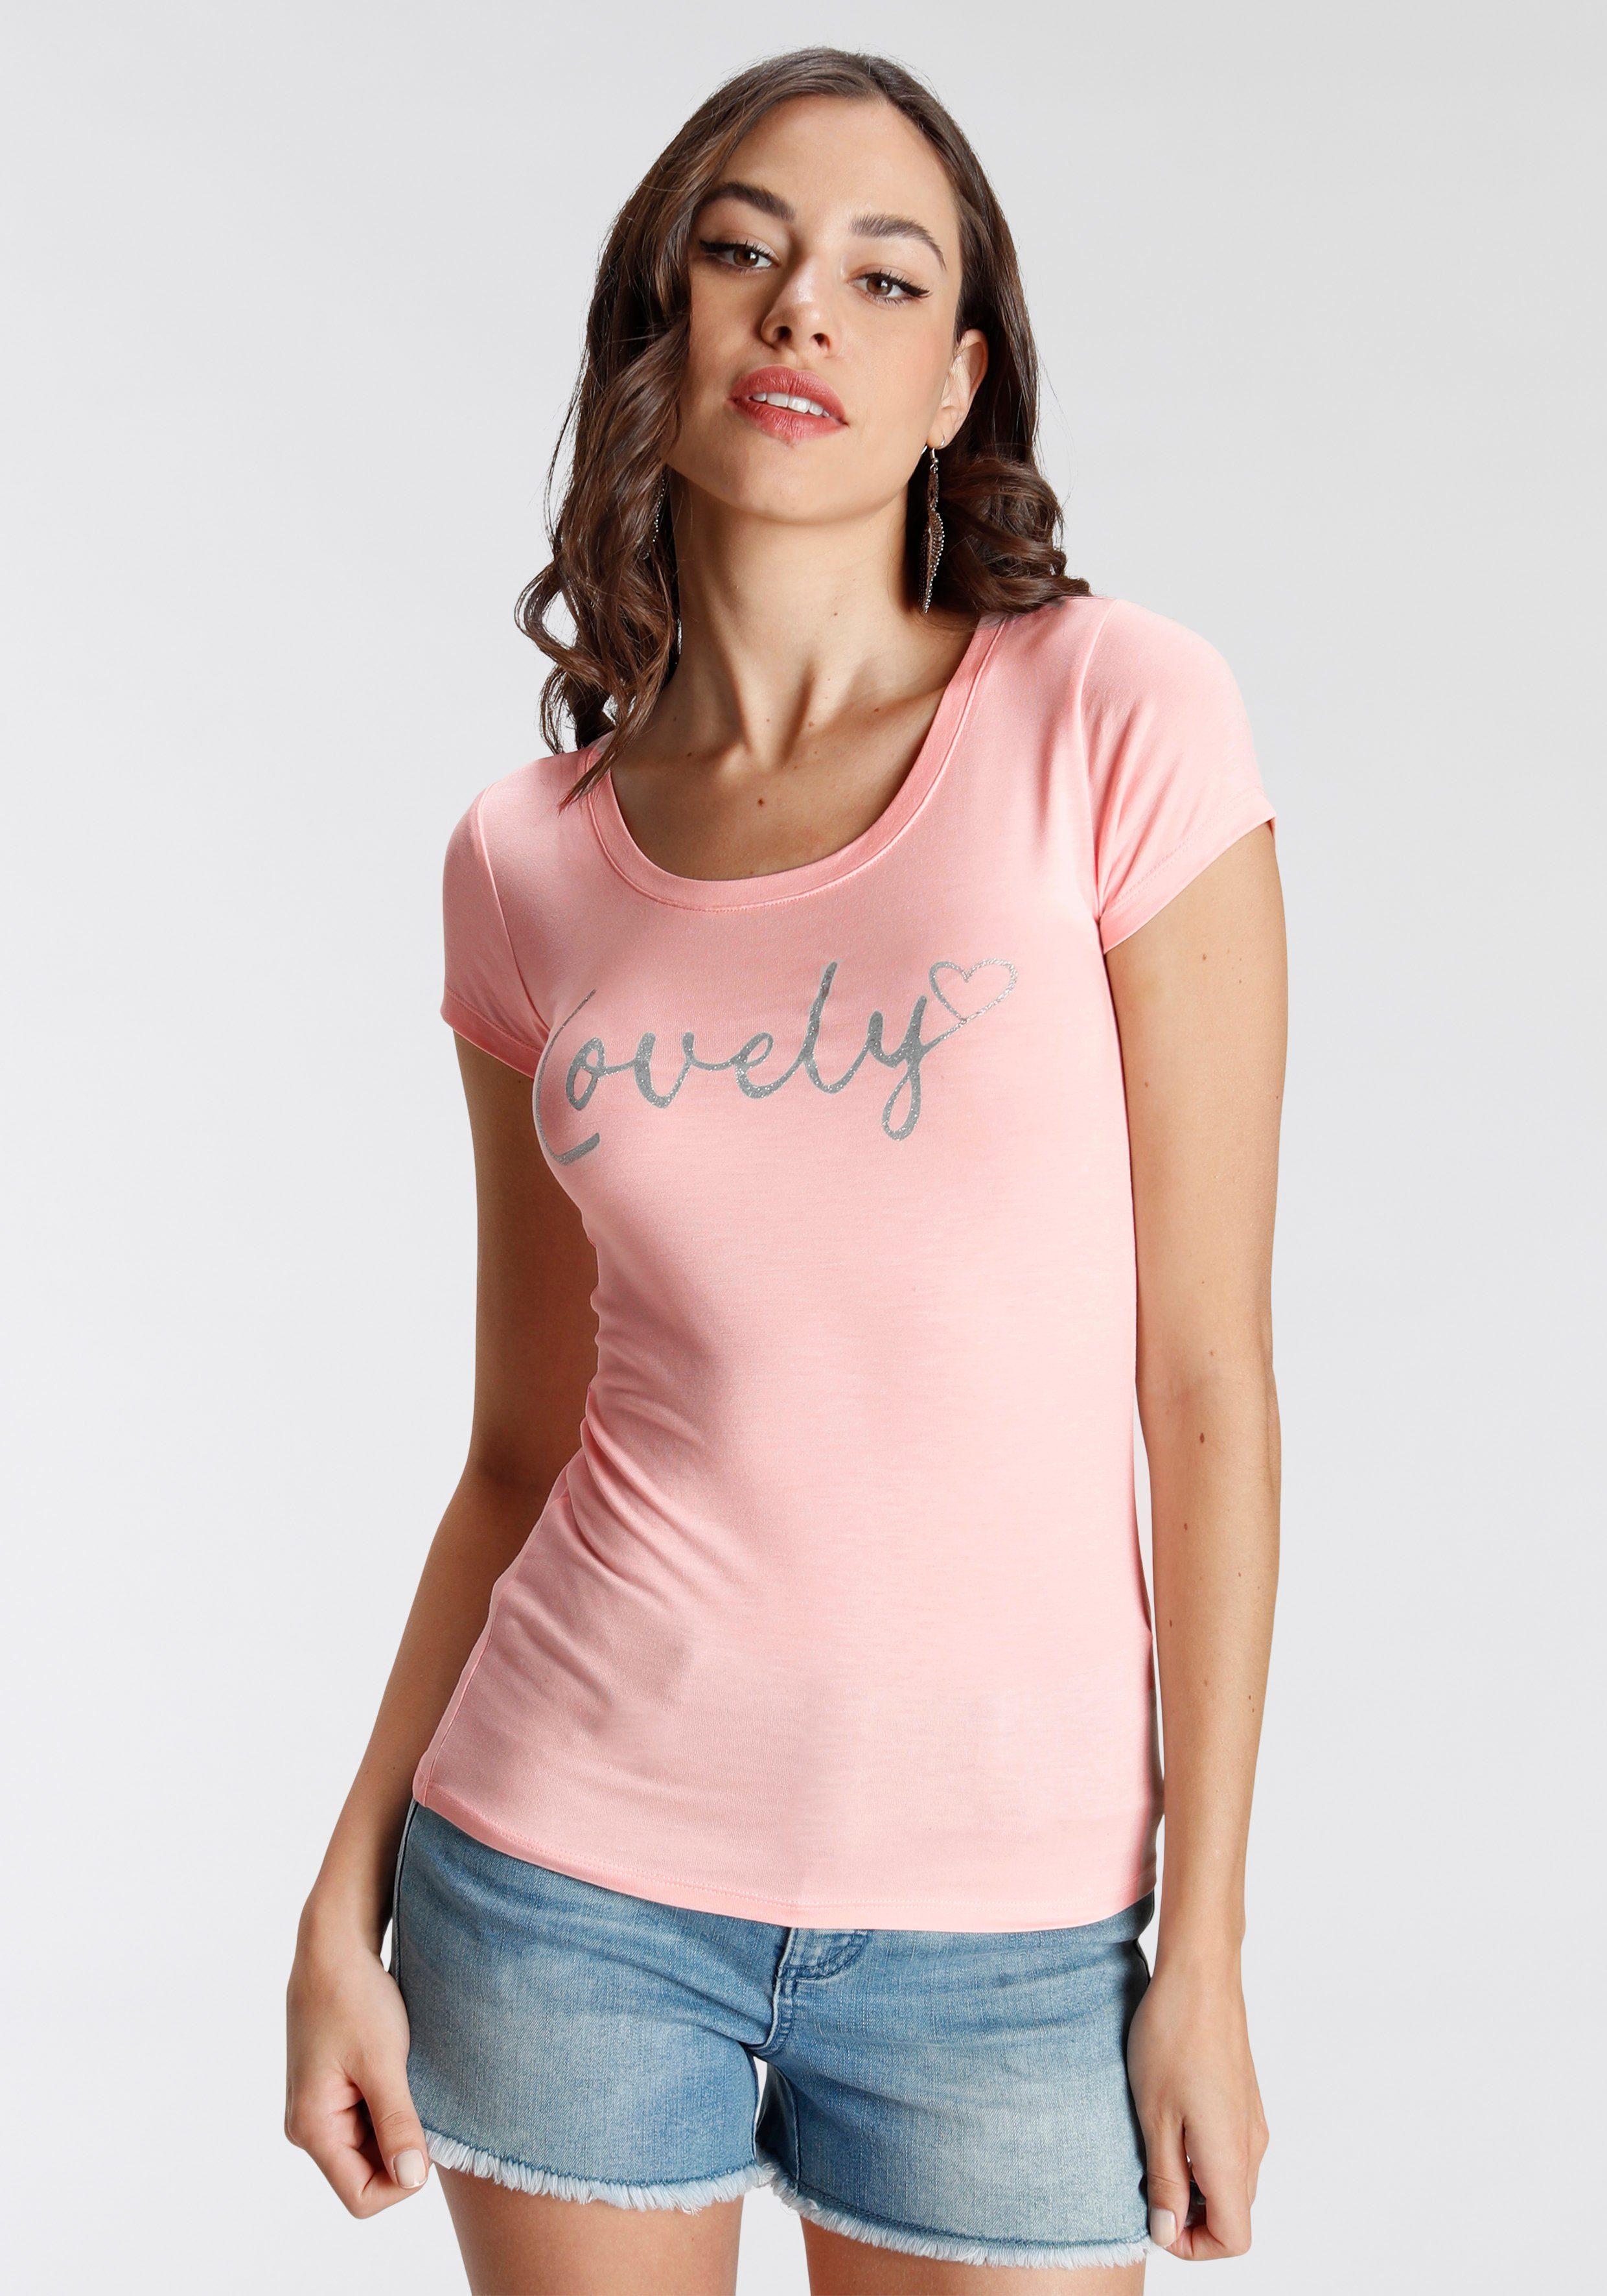 T-Shirt Glitzerdruck mit Melrose